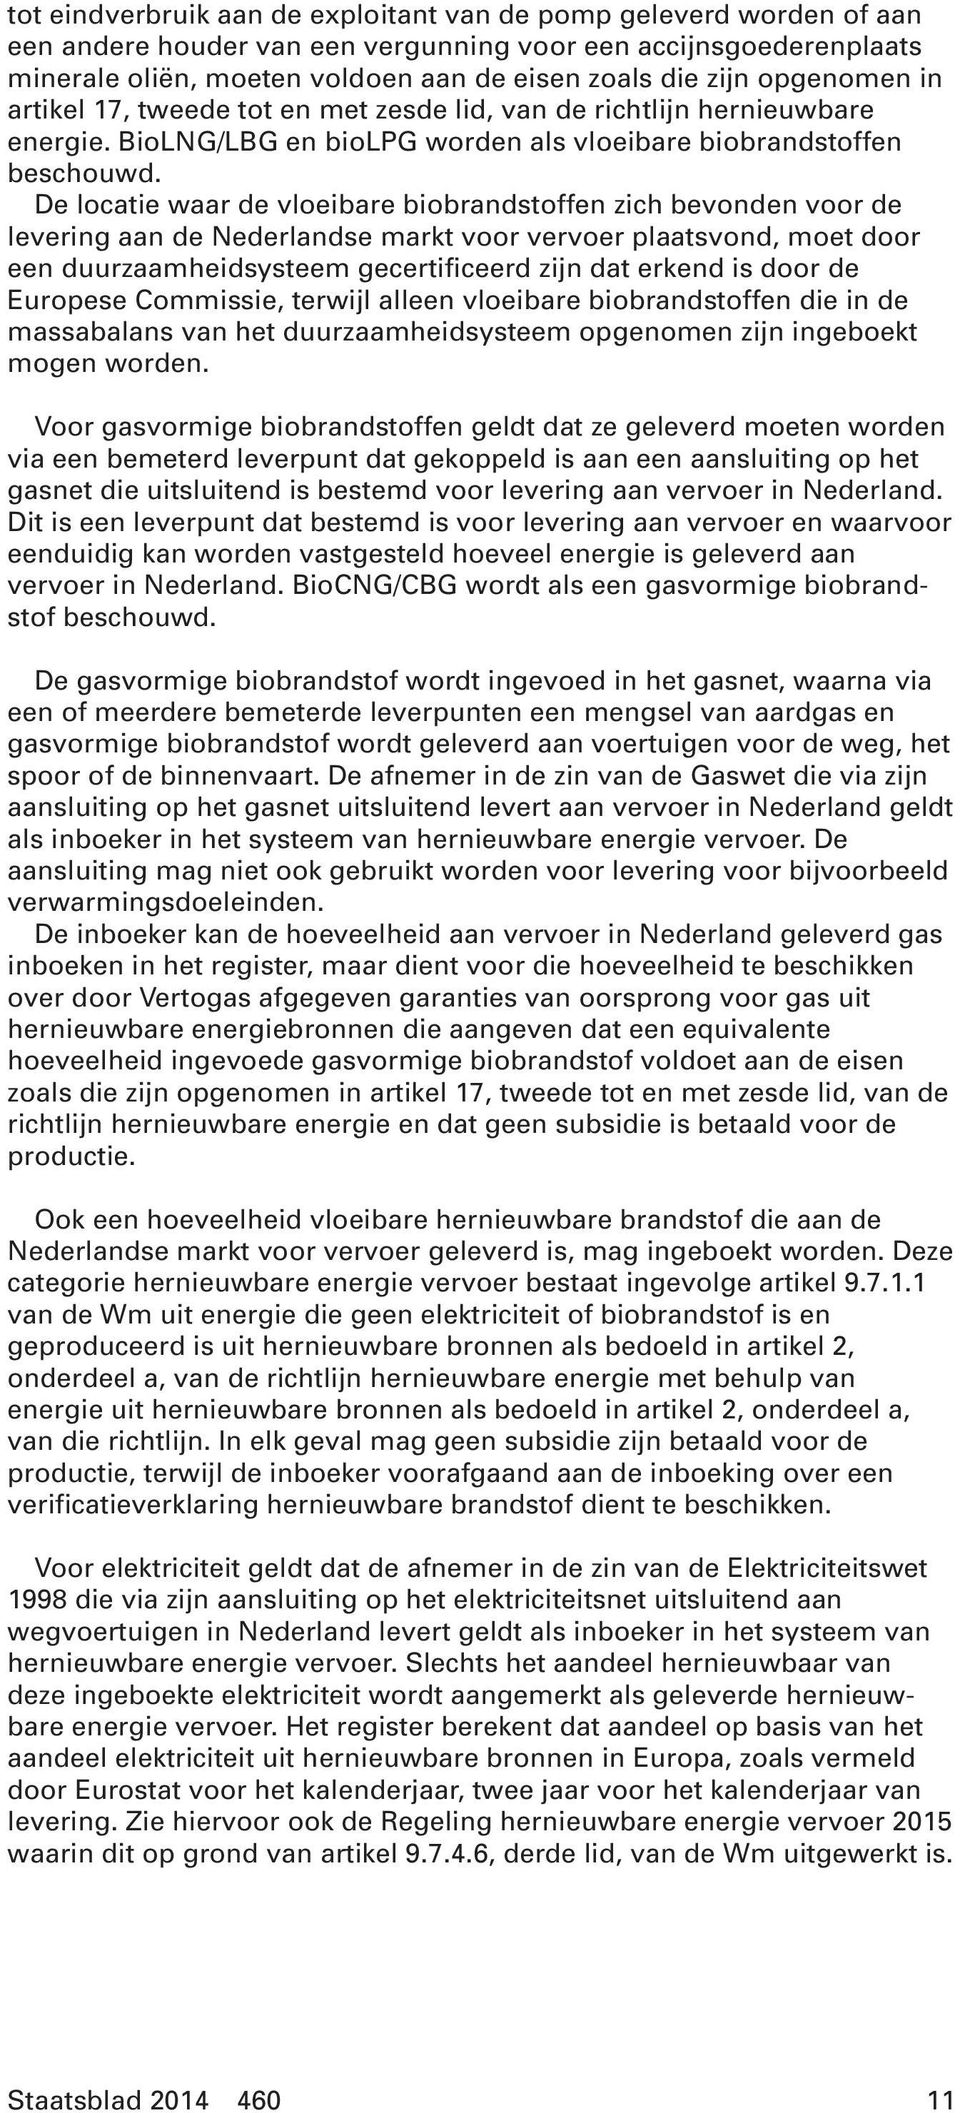 De locatie waar de vloeibare biobrandstoffen zich bevonden voor de levering aan de Nederlandse markt voor vervoer plaatsvond, moet door een duurzaamheidsysteem gecertificeerd zijn dat erkend is door